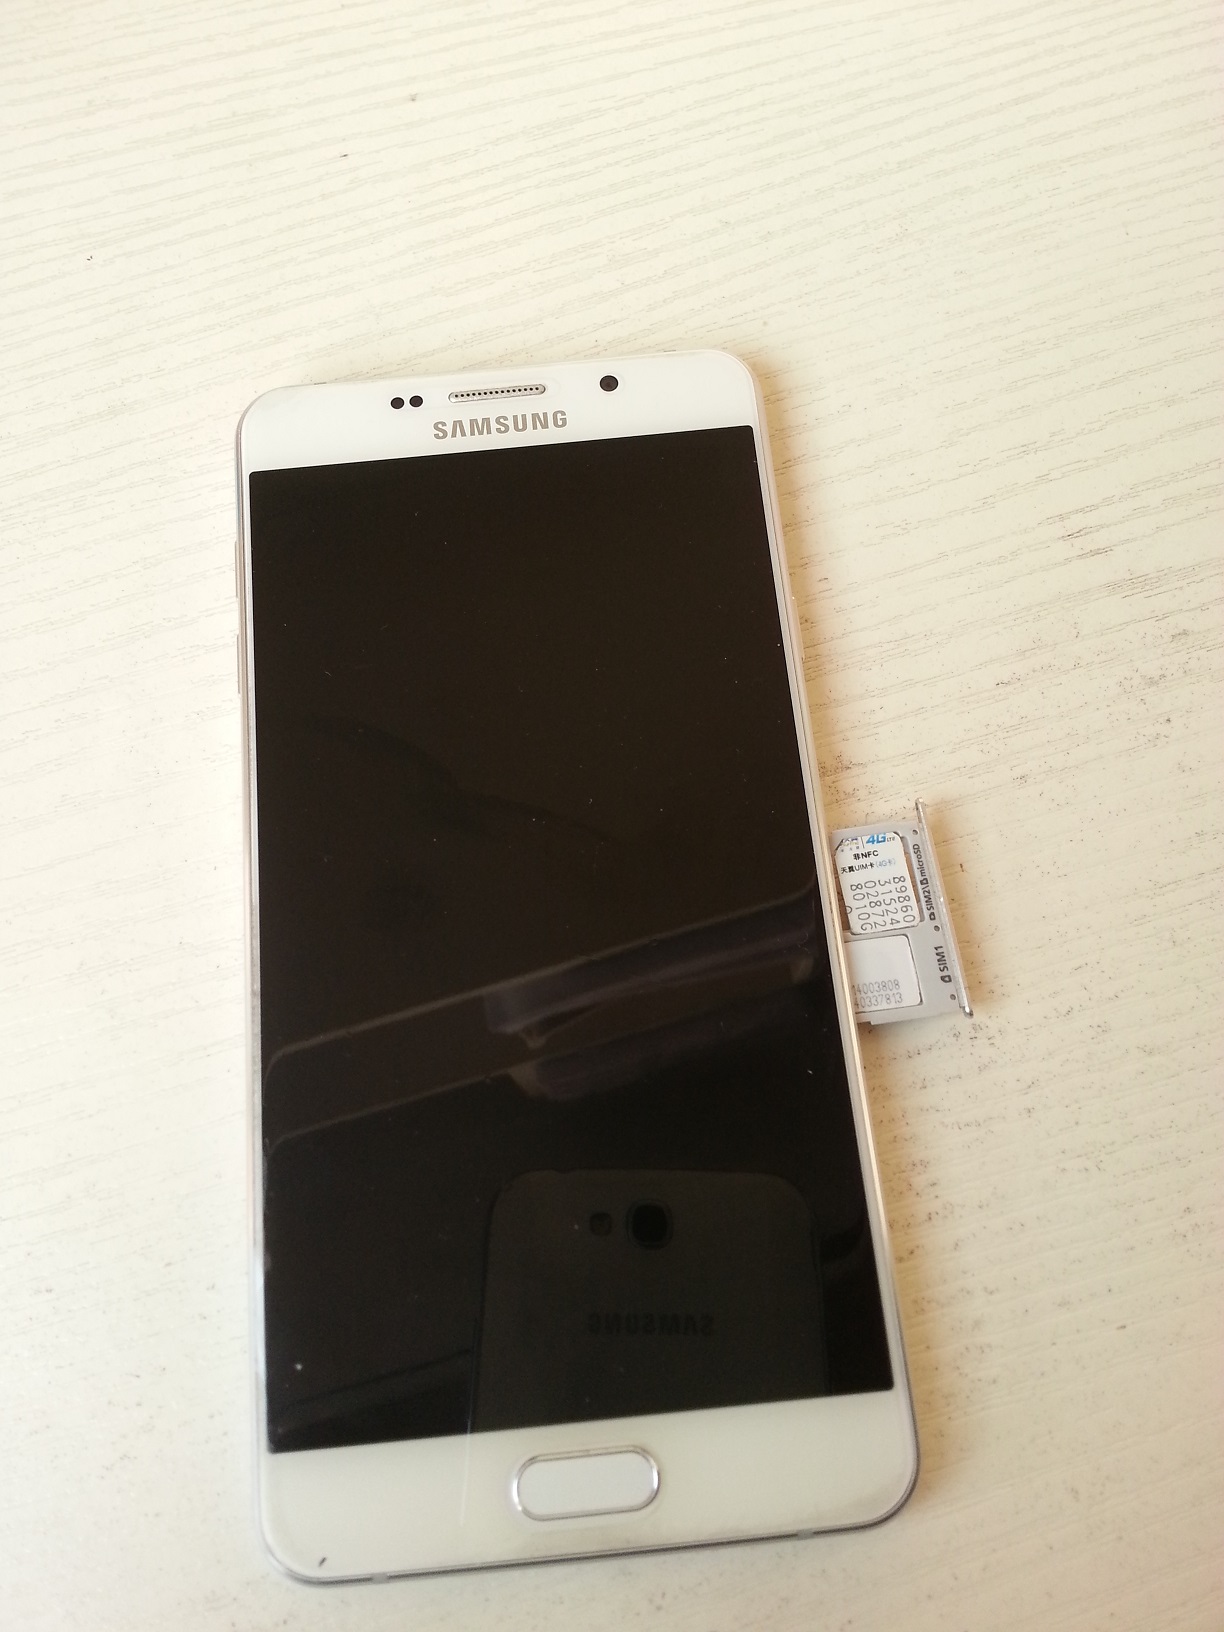 Samsung Galaxy A7 (2016) Duos SM-A7100 16GB Dual SIM Unlocked GSM ...